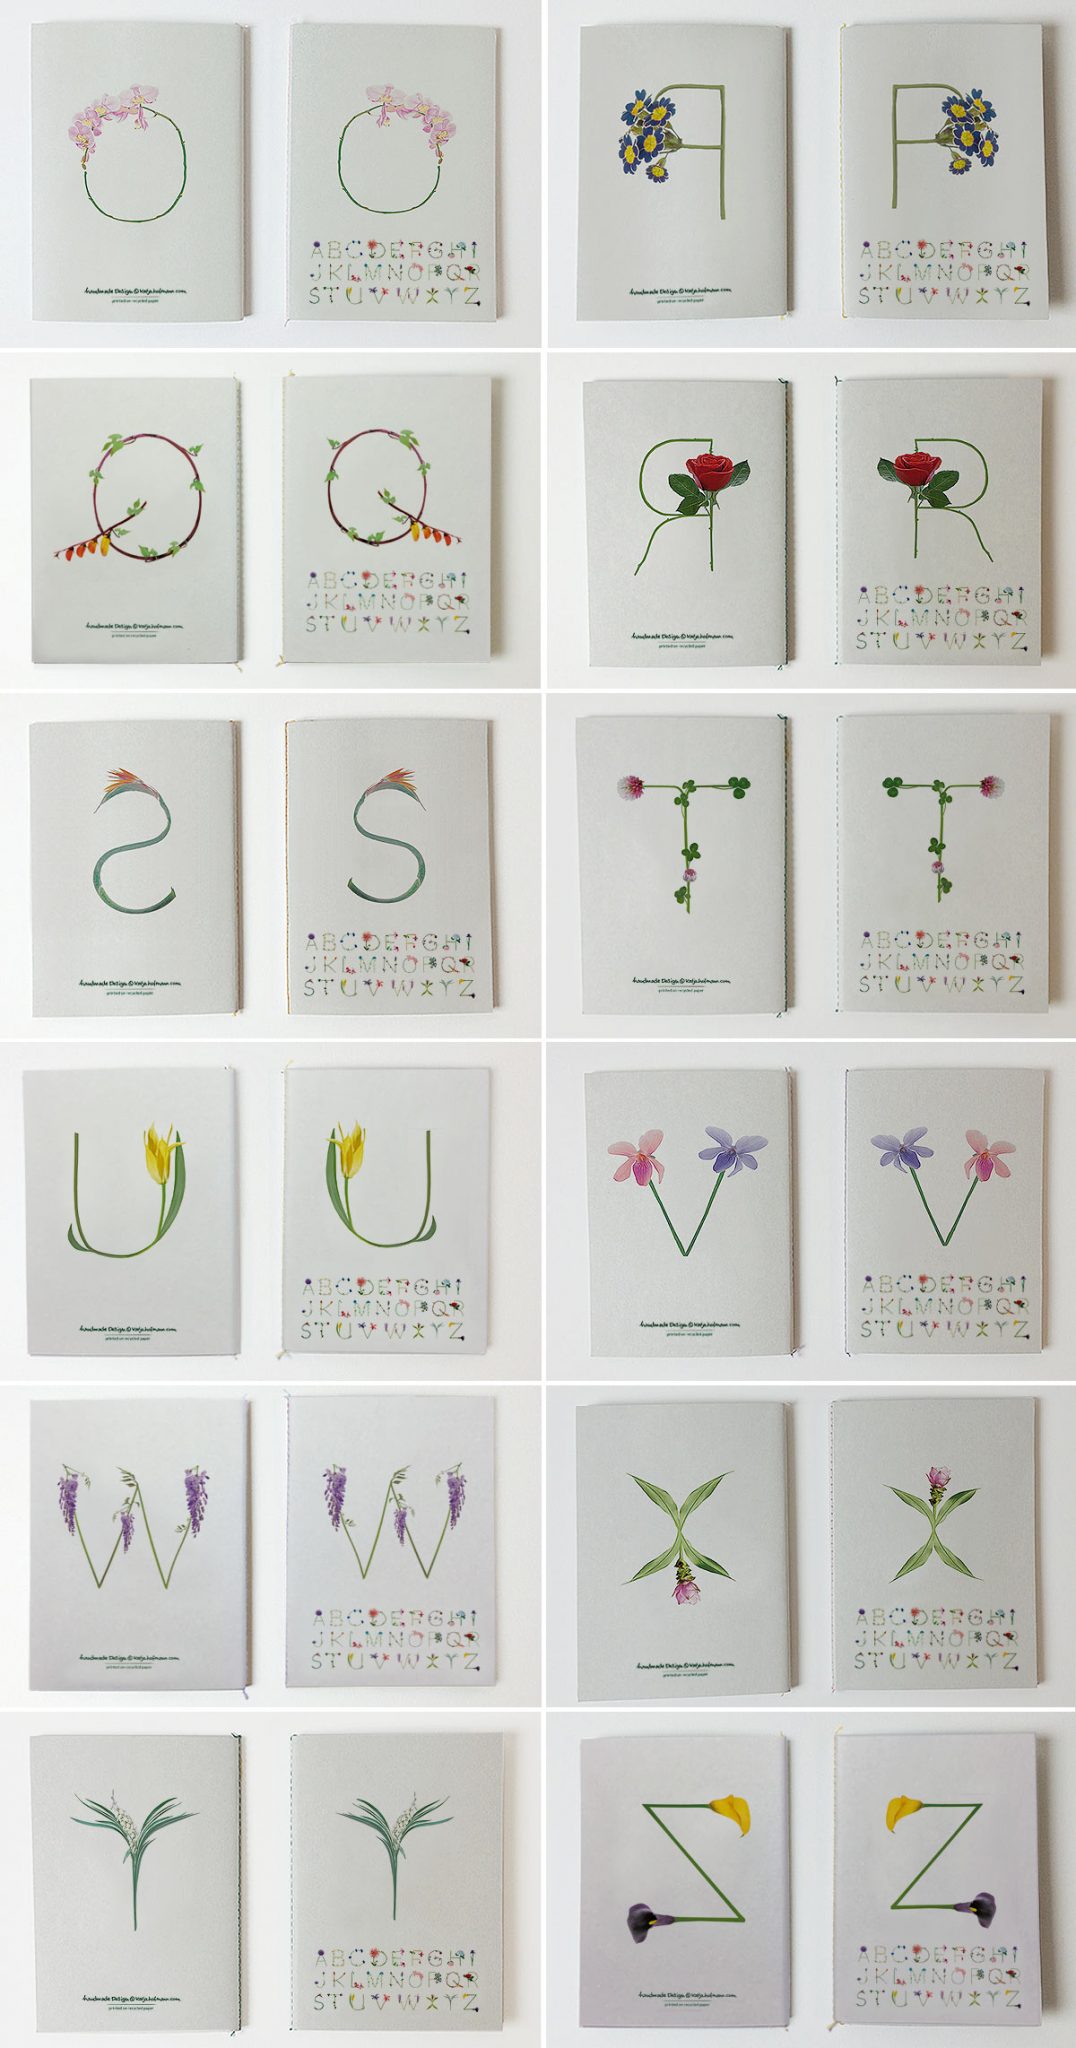 Katja Hofmann, Studio for good handmade Design, Blumenbuchstaben, Blumenschrift, Blumenalphabet, Print, Notizbücher, Fadenbindung, handmade, Recyclingpapier